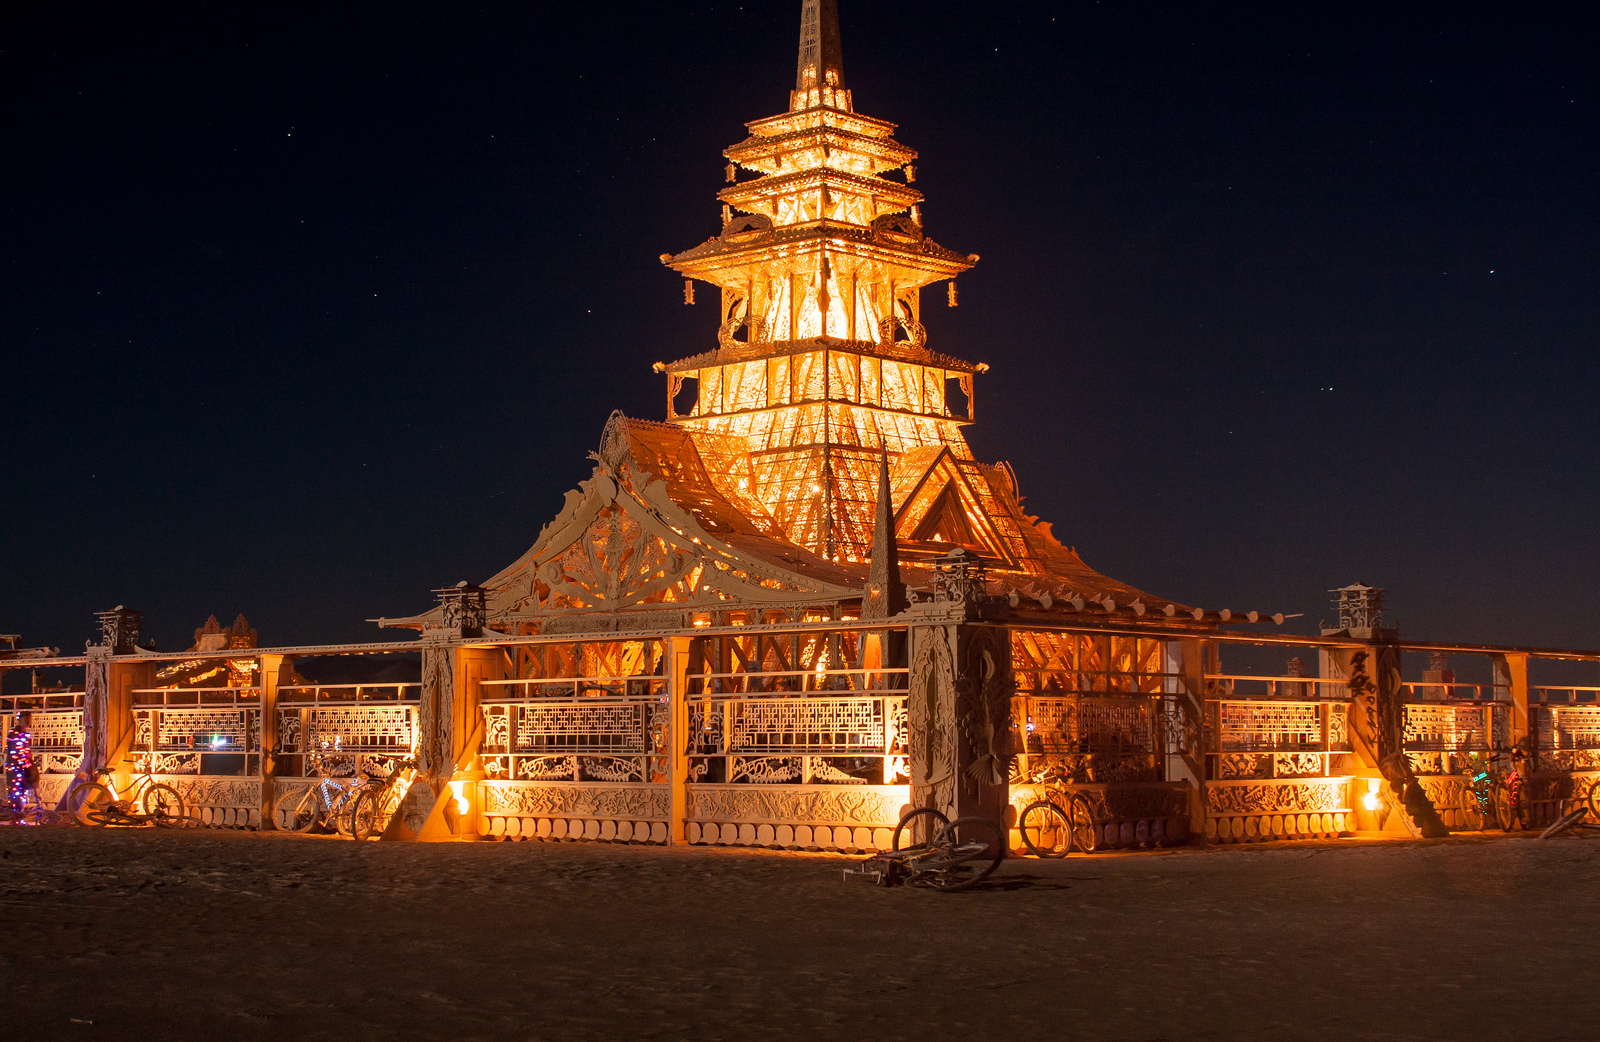 El Burning Man un festival lleno de magia ShangayShangay